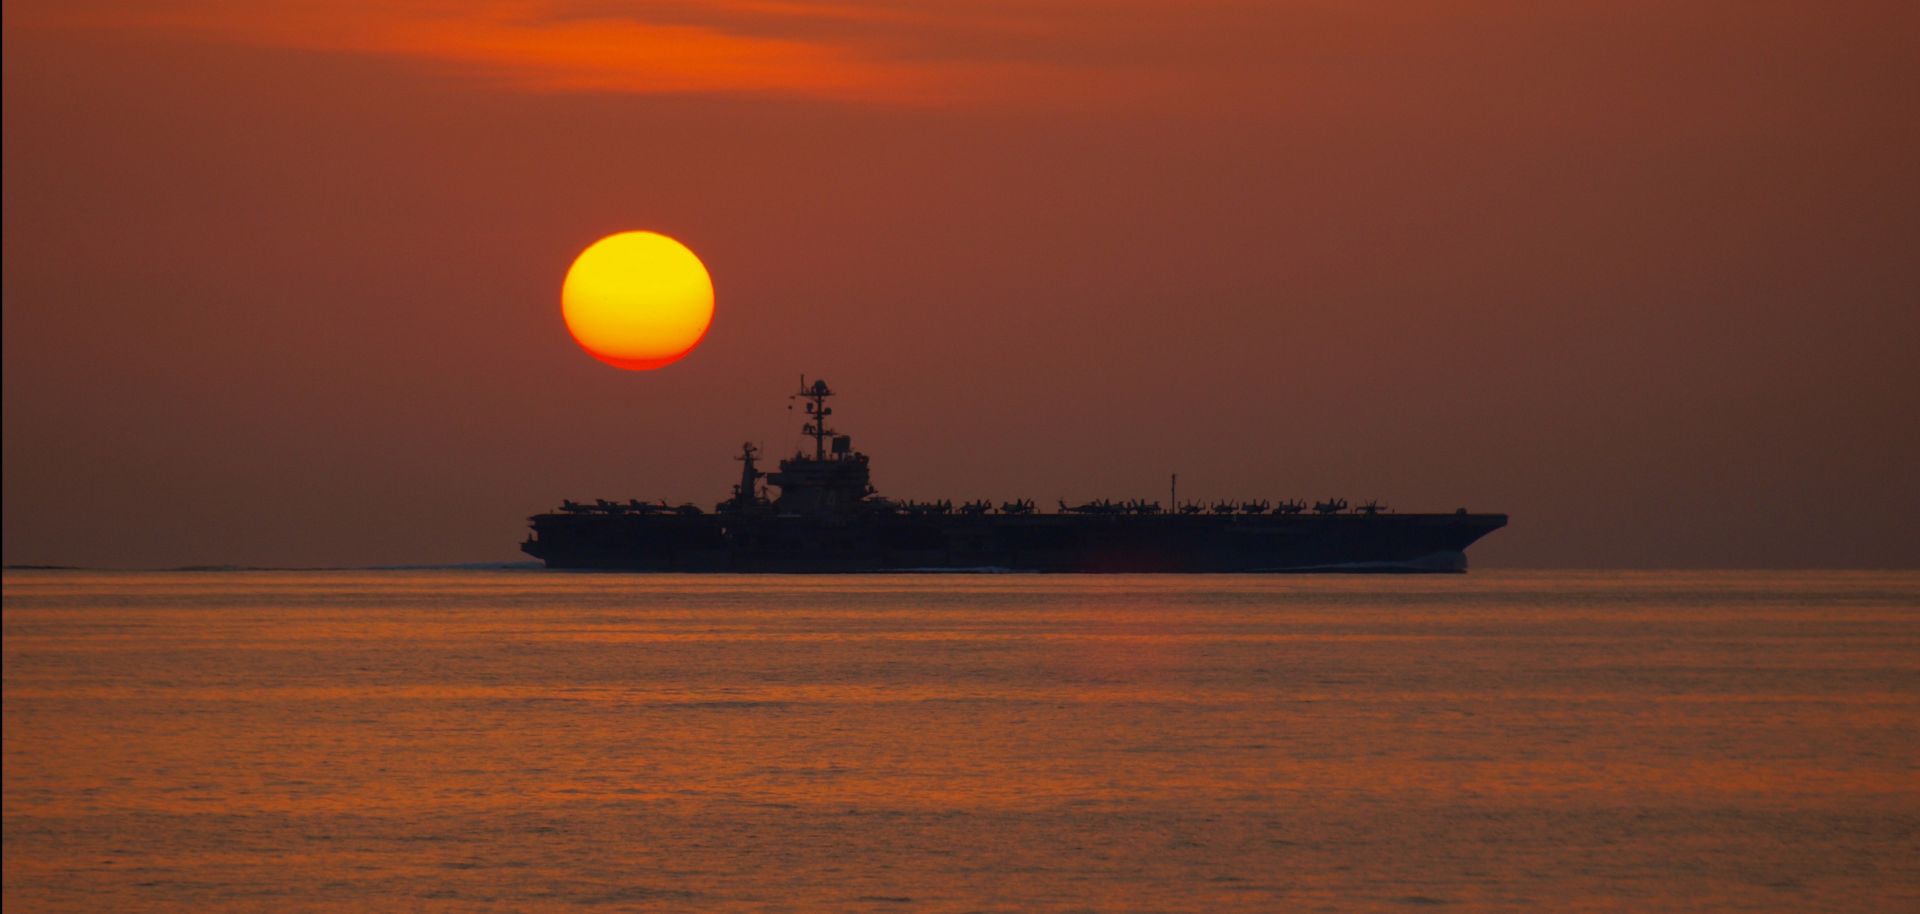 The Nimitz-class aircraft carrier USS John C Stennis operates.